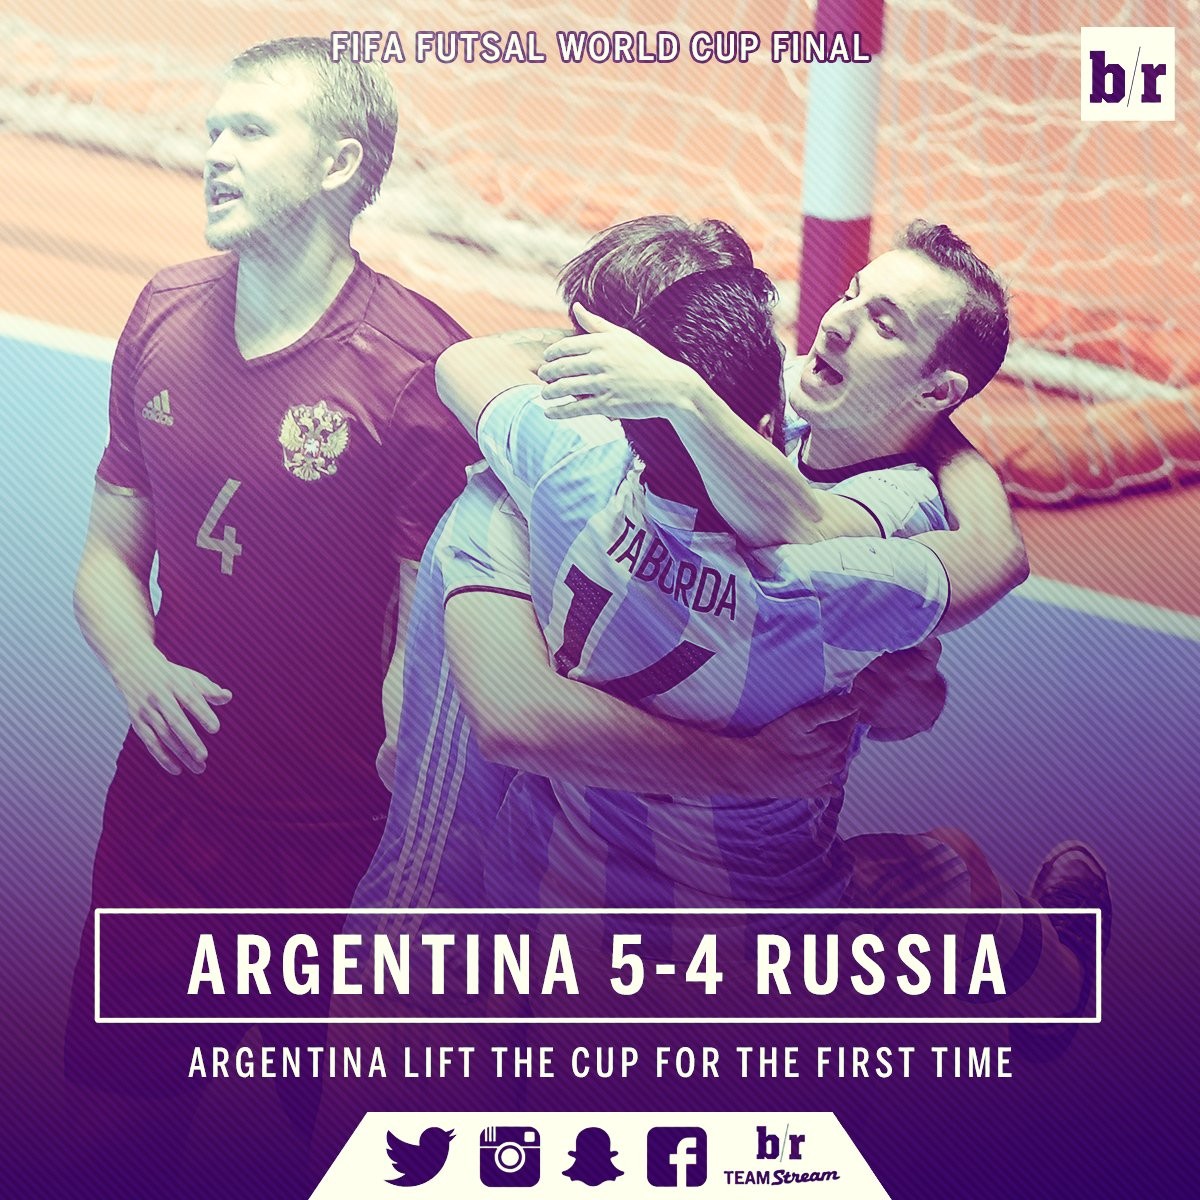 创造历史!阿根廷5-4俄罗斯夺五人制世界杯冠军